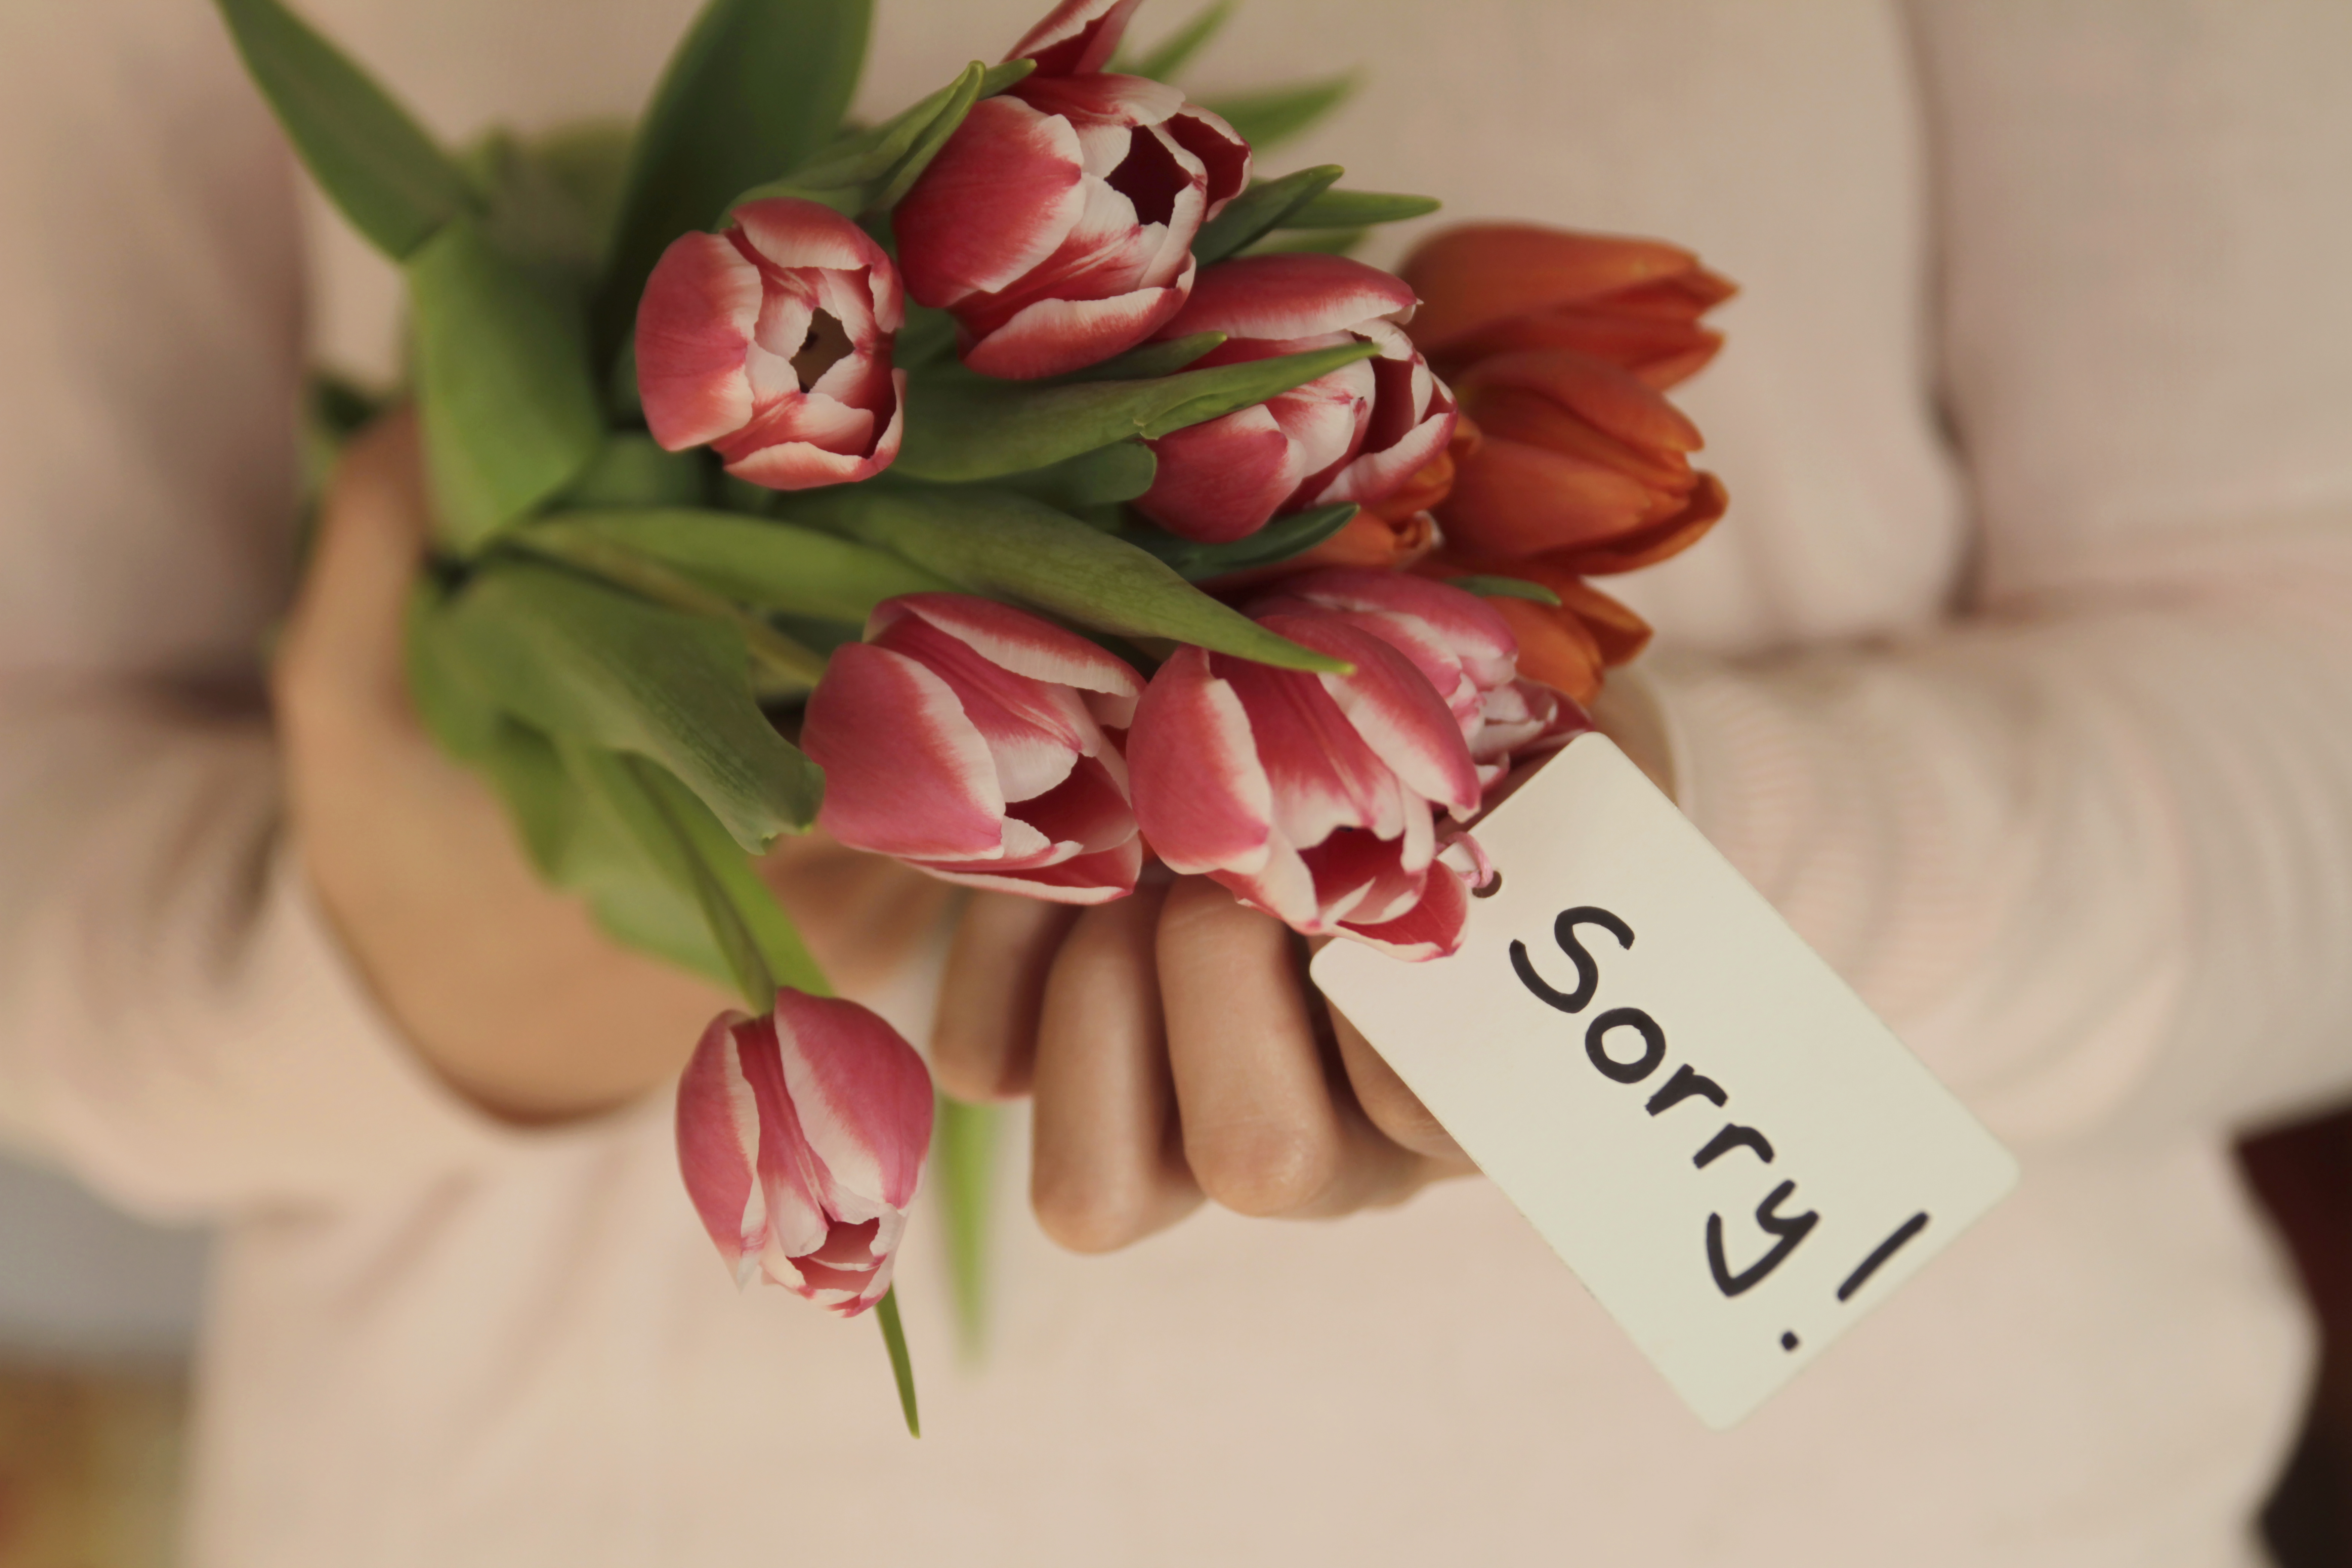 Blumen mit einer Entschuldigungsnotiz | Quelle: Getty Images